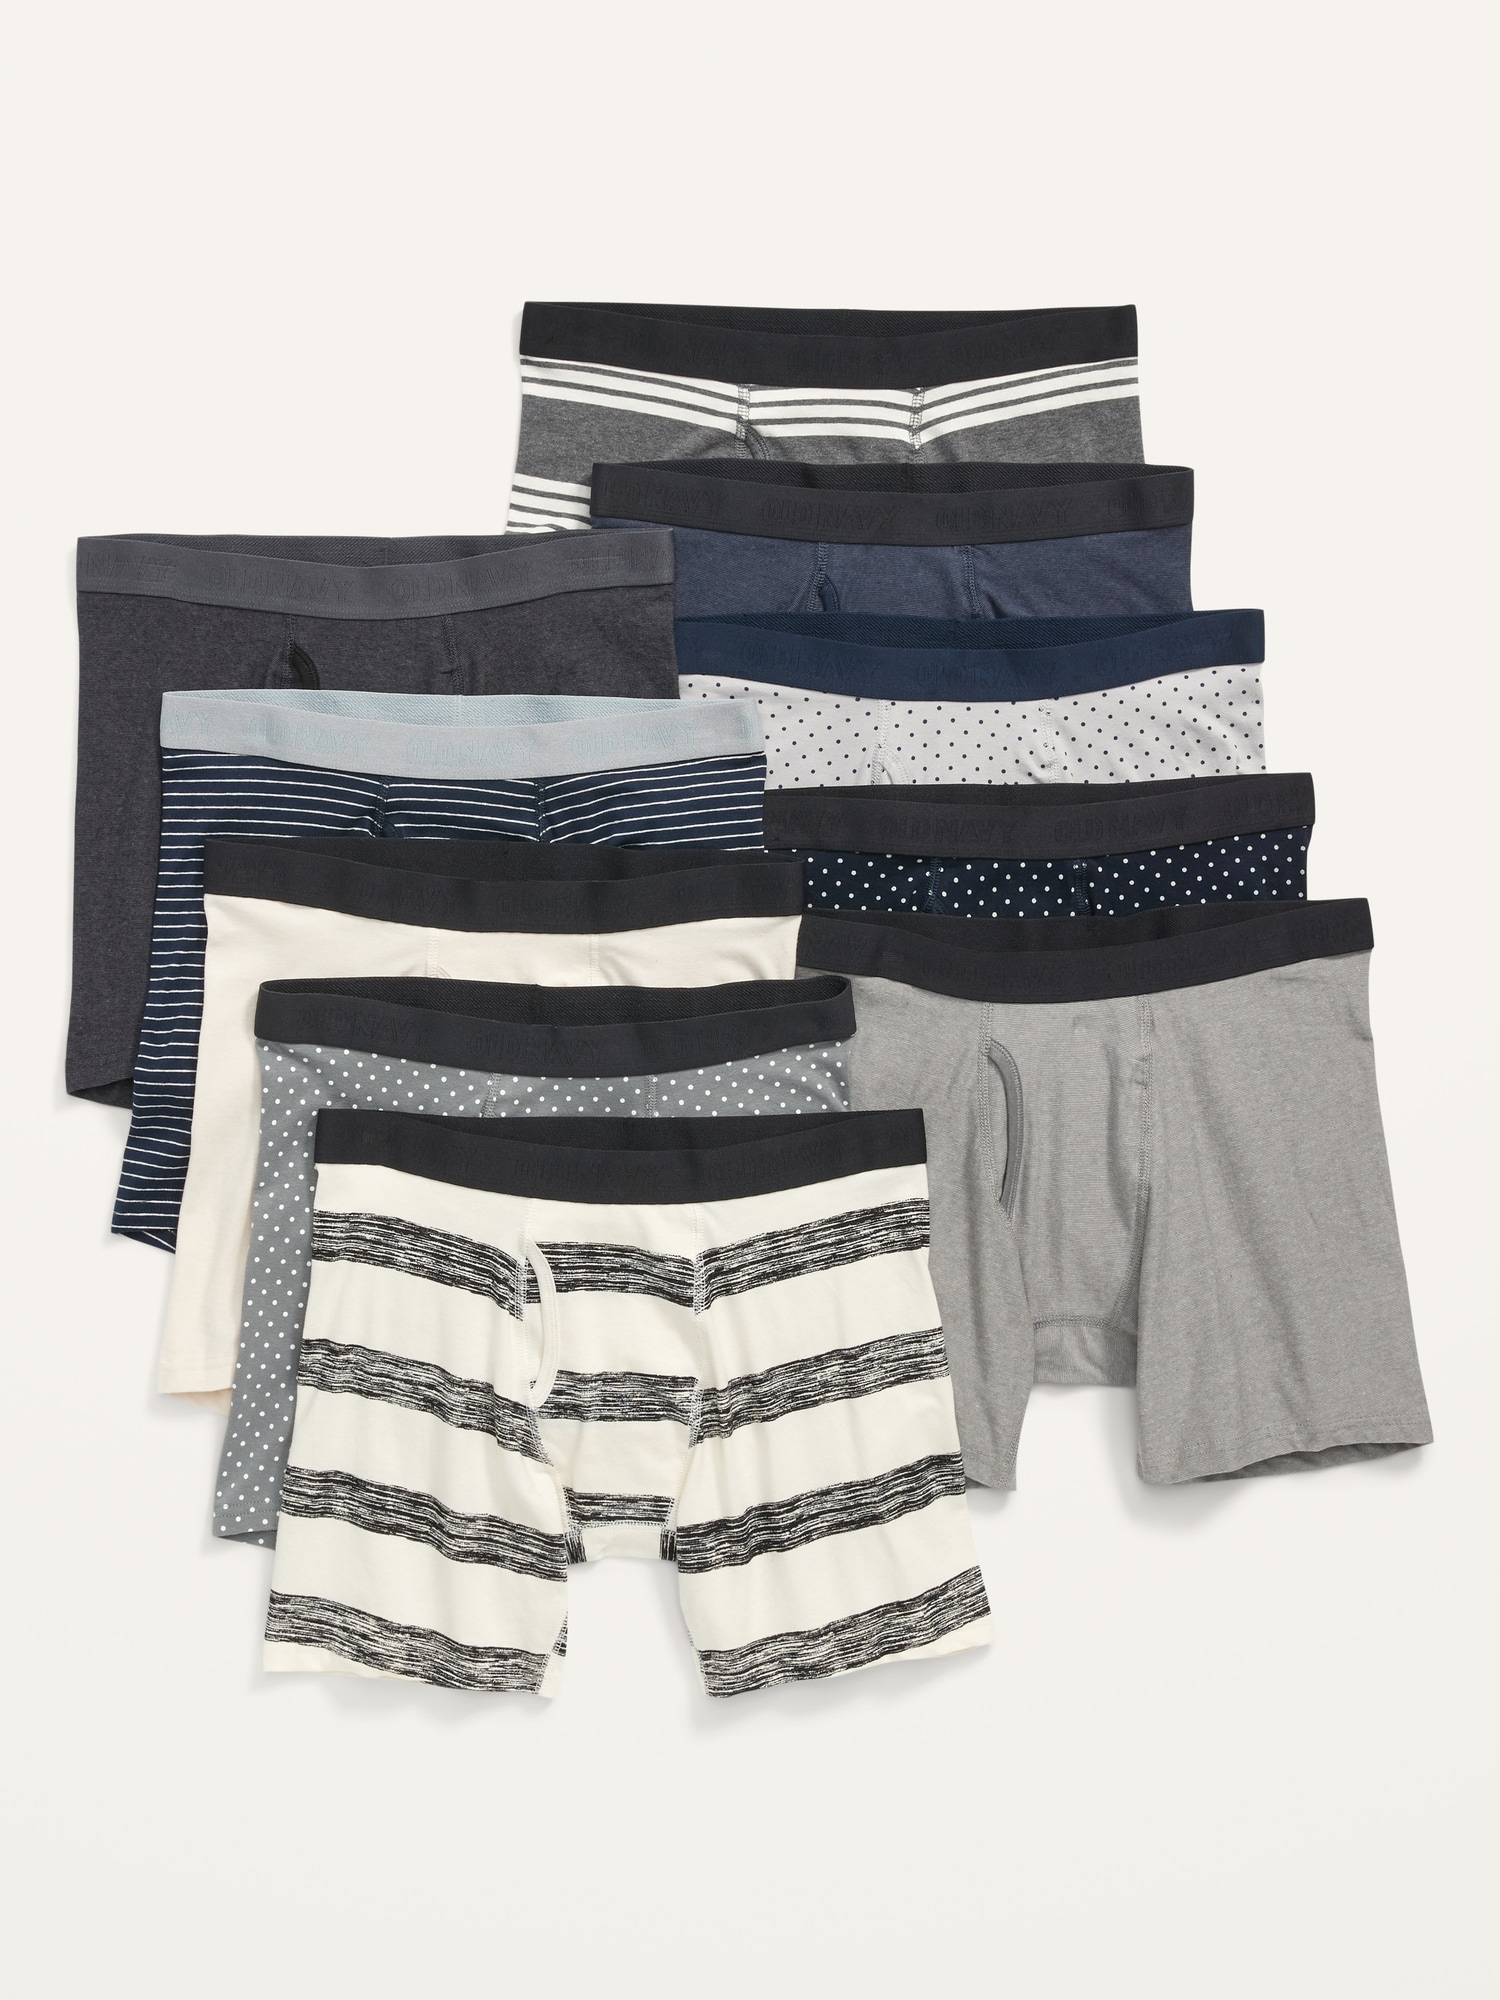 Soft-Washed Built-In Flex Boxer-Briefs Underwear 10-Pack for Men -- 6. ...